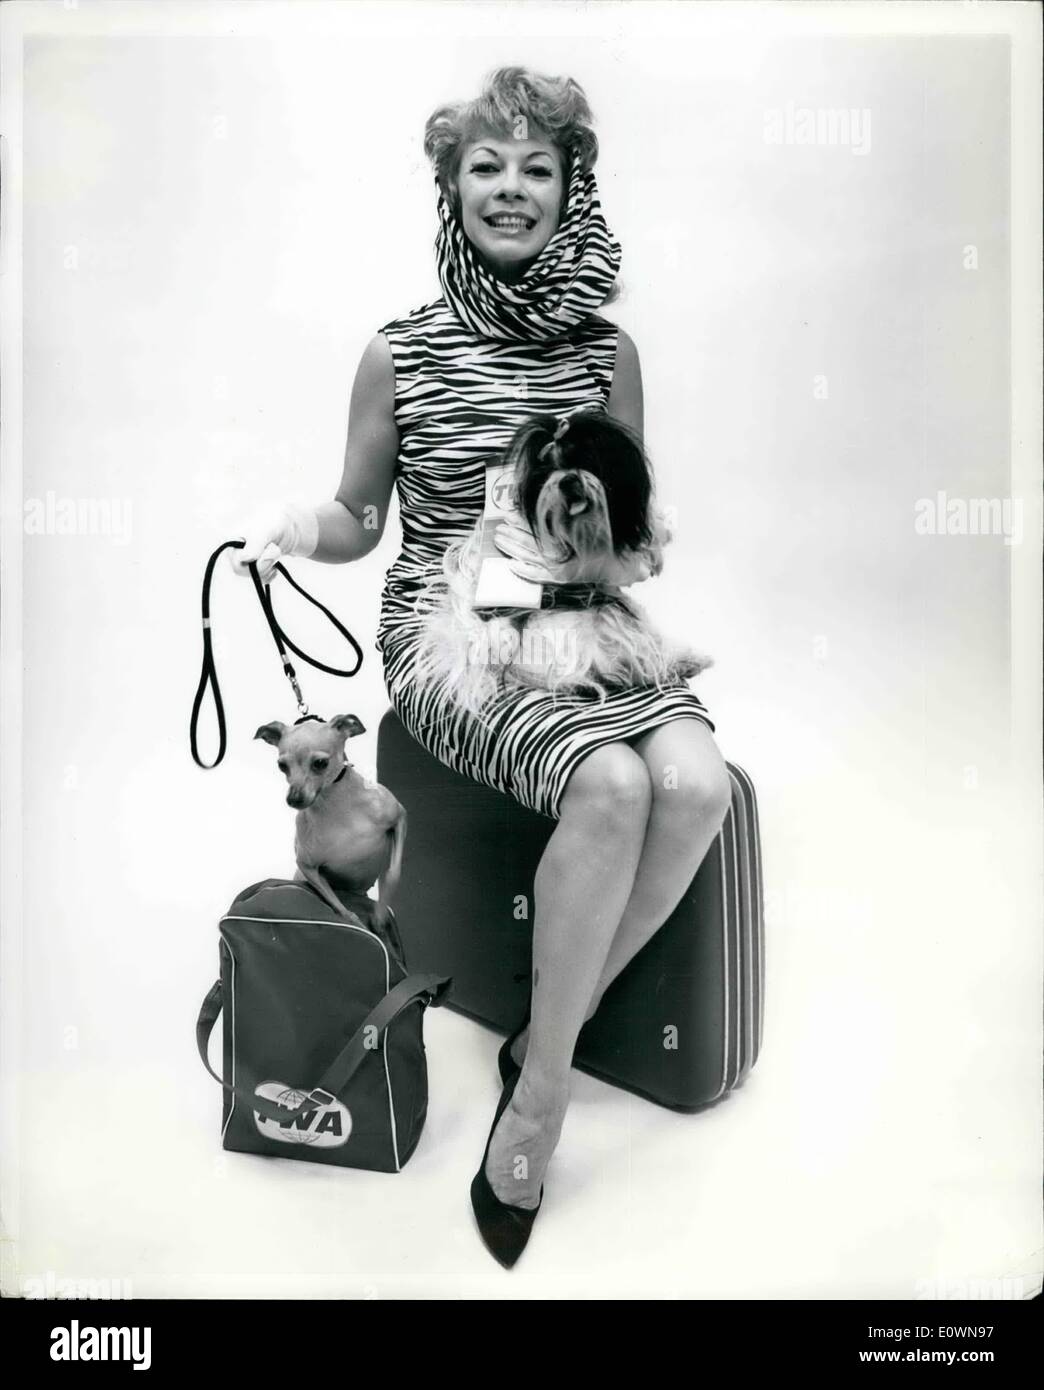 10 octobre 1963 - L'Aéroport International de New York, .. Poivre de soutiens Powell est illustré en arrivant de Londres par avion de la TWA pour ouvrir la fonction comme attraction dans ''C'était Burlesque,'' le poivre, considéré comme l'un des plus gracieux strippers dans le show-business, a apporté ses deux chiens, Koupé Ming, un Lhassa et Gina, Italien Greyhound. Banque D'Images